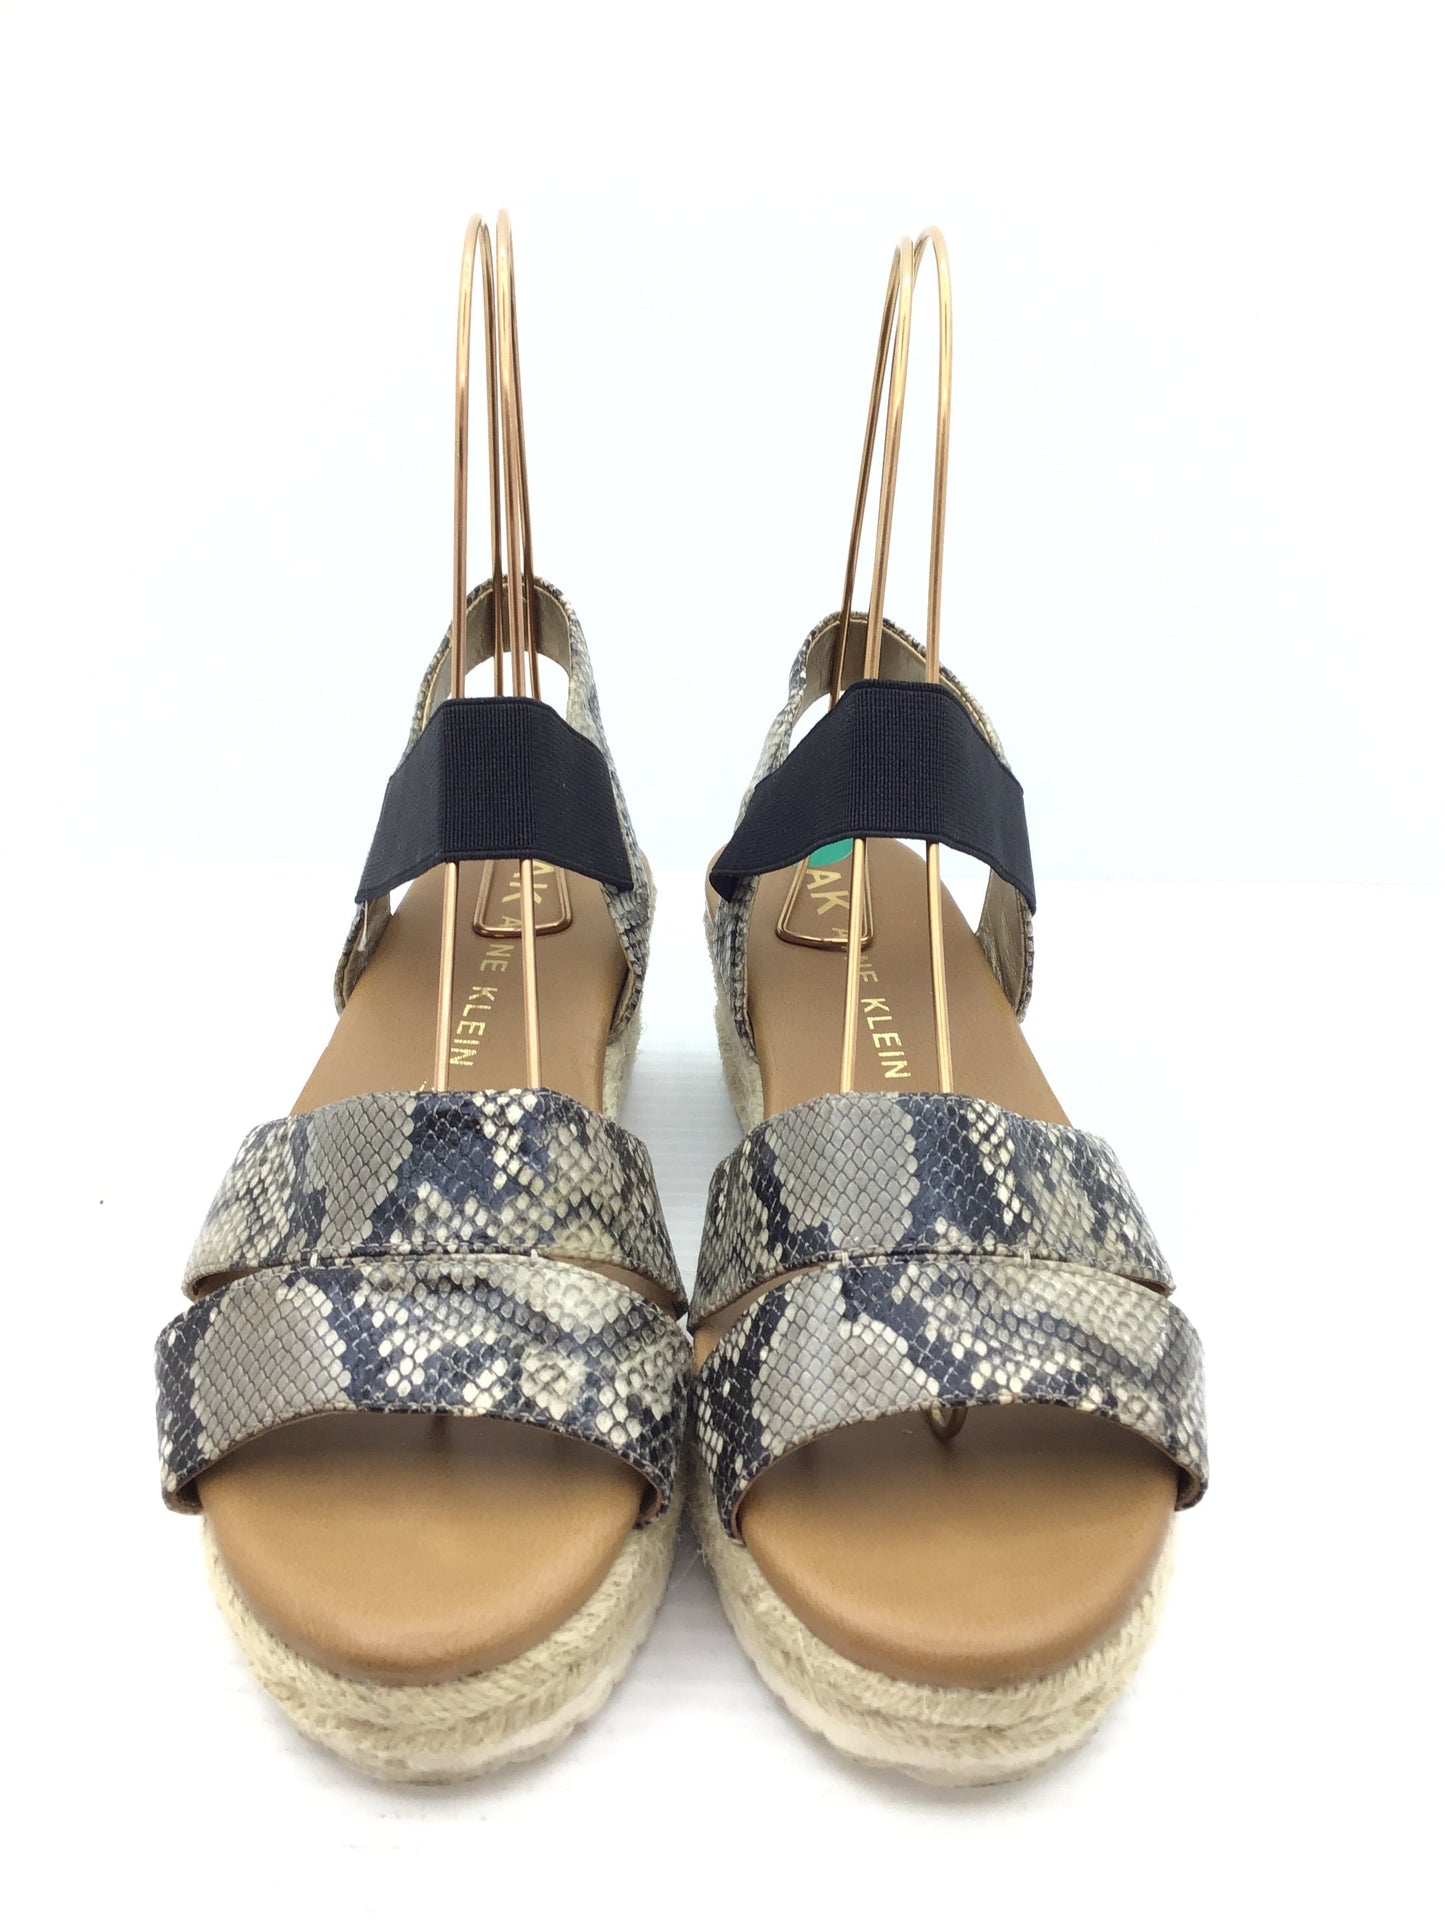 Sandals Heels Wedge By Anne Klein  Size: 8